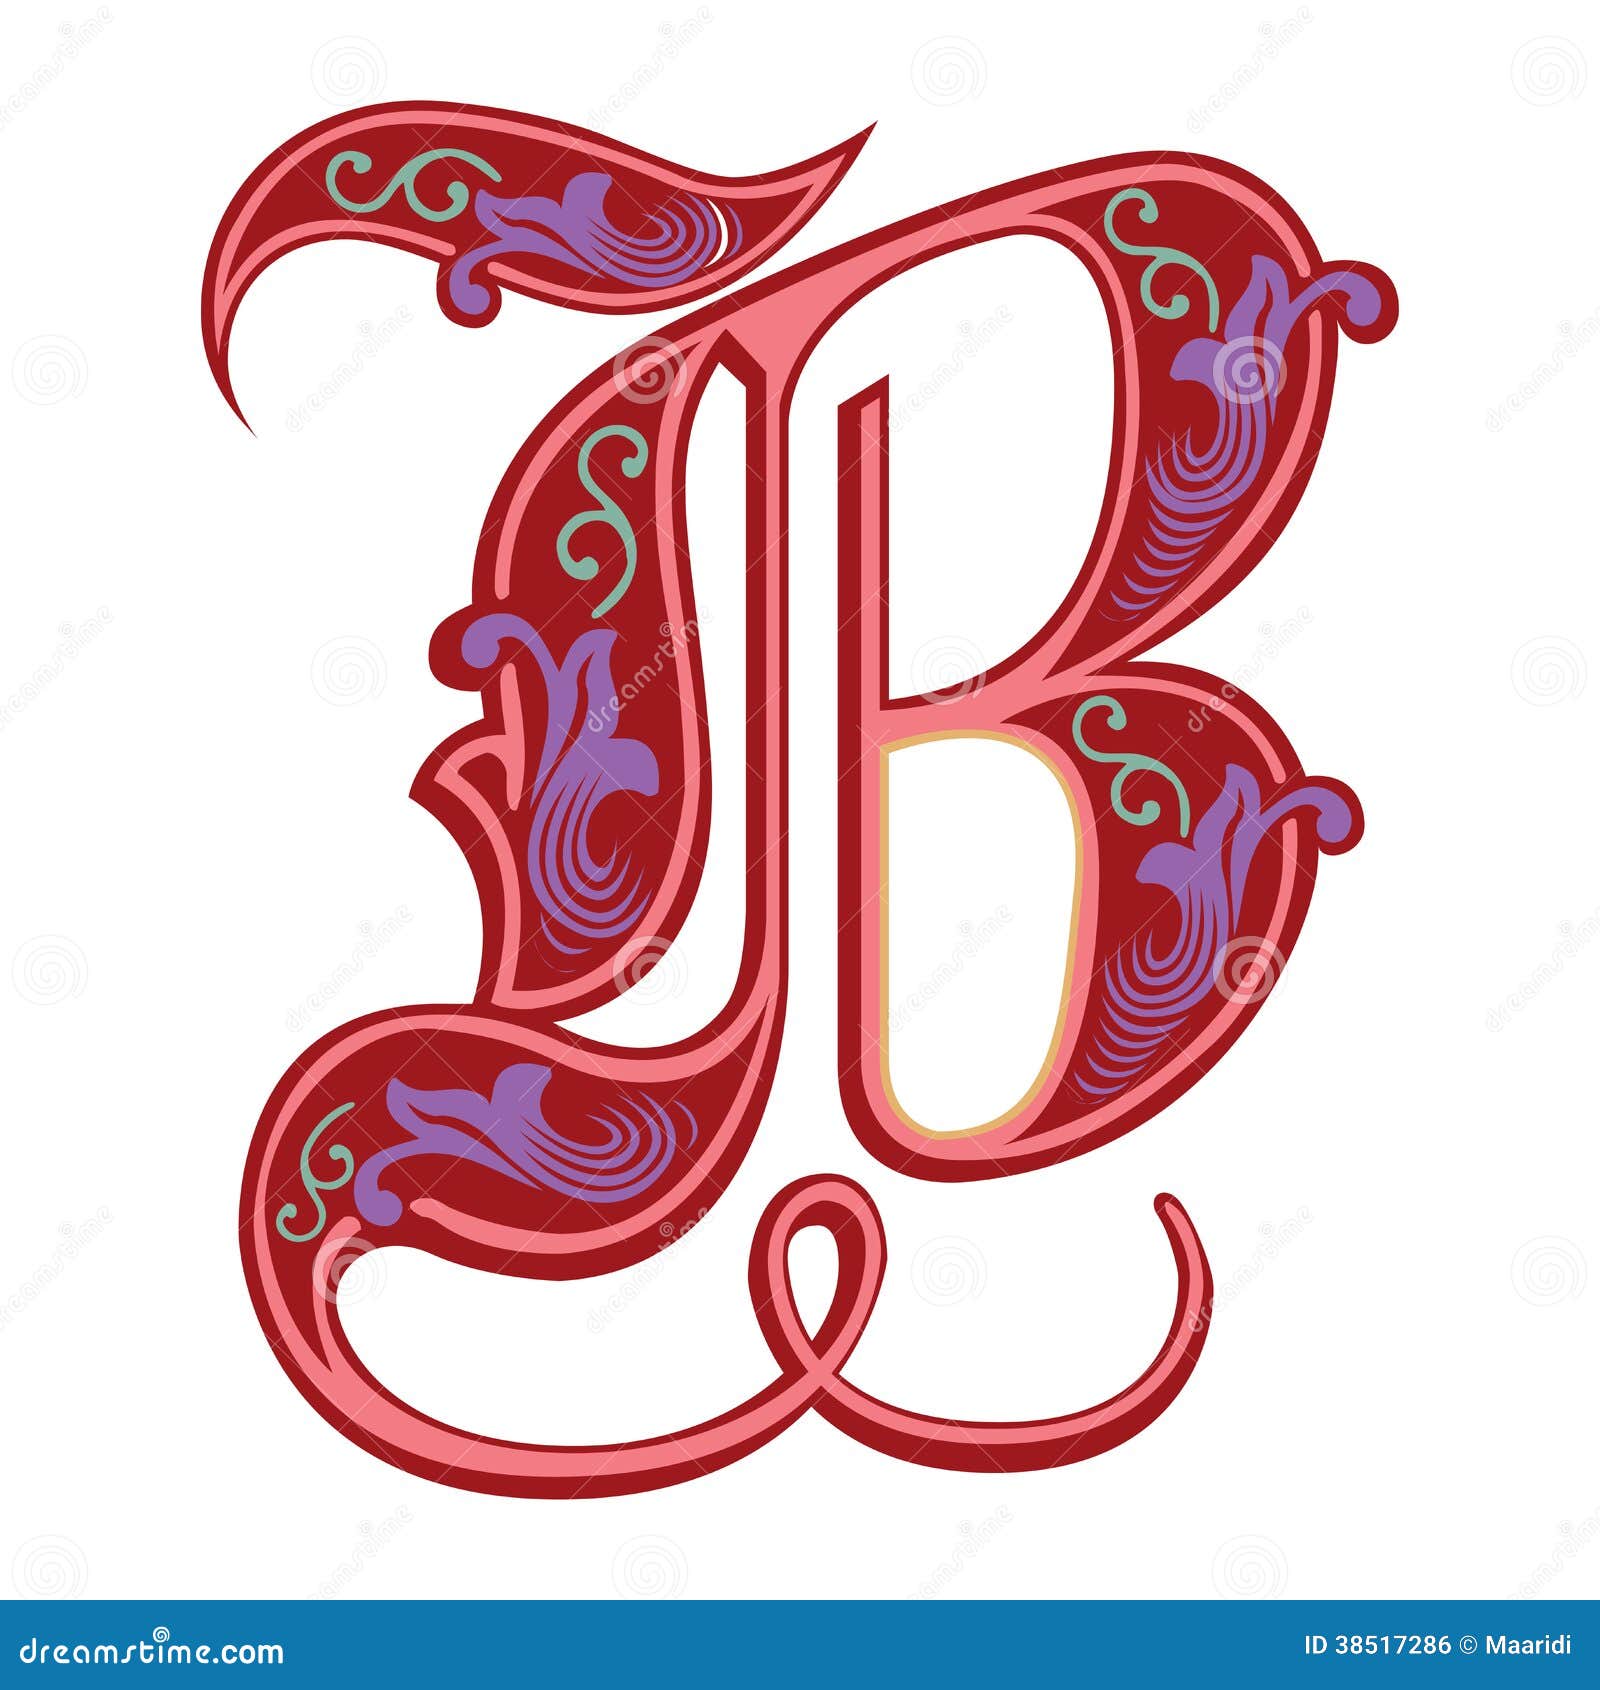 Image for doodle art letter b